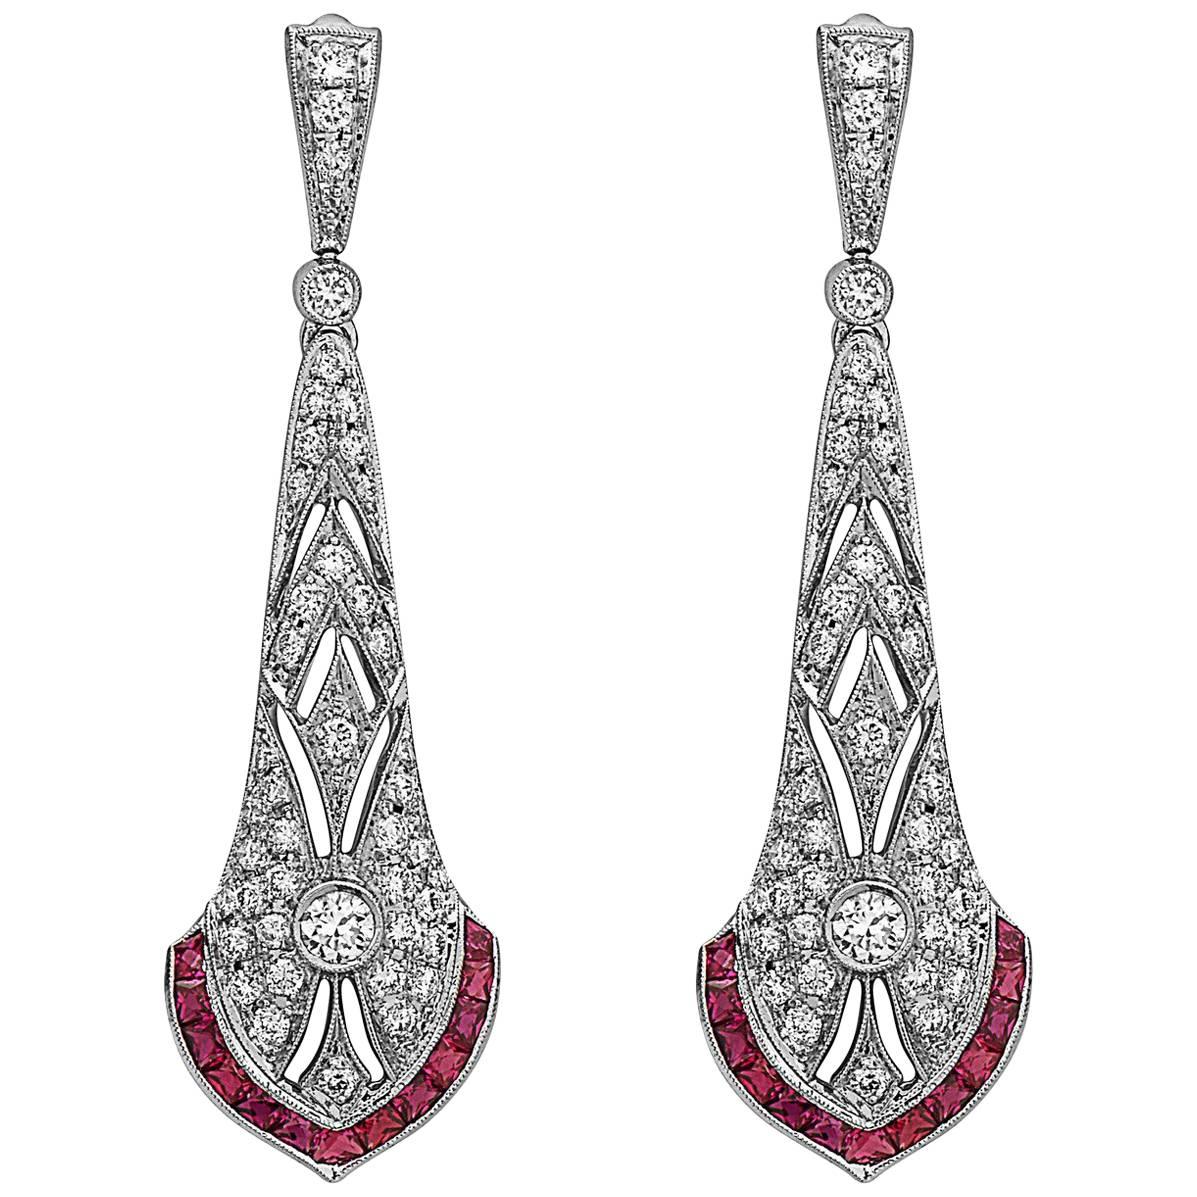 Emilio Jewelry Diamond Drop Earrings